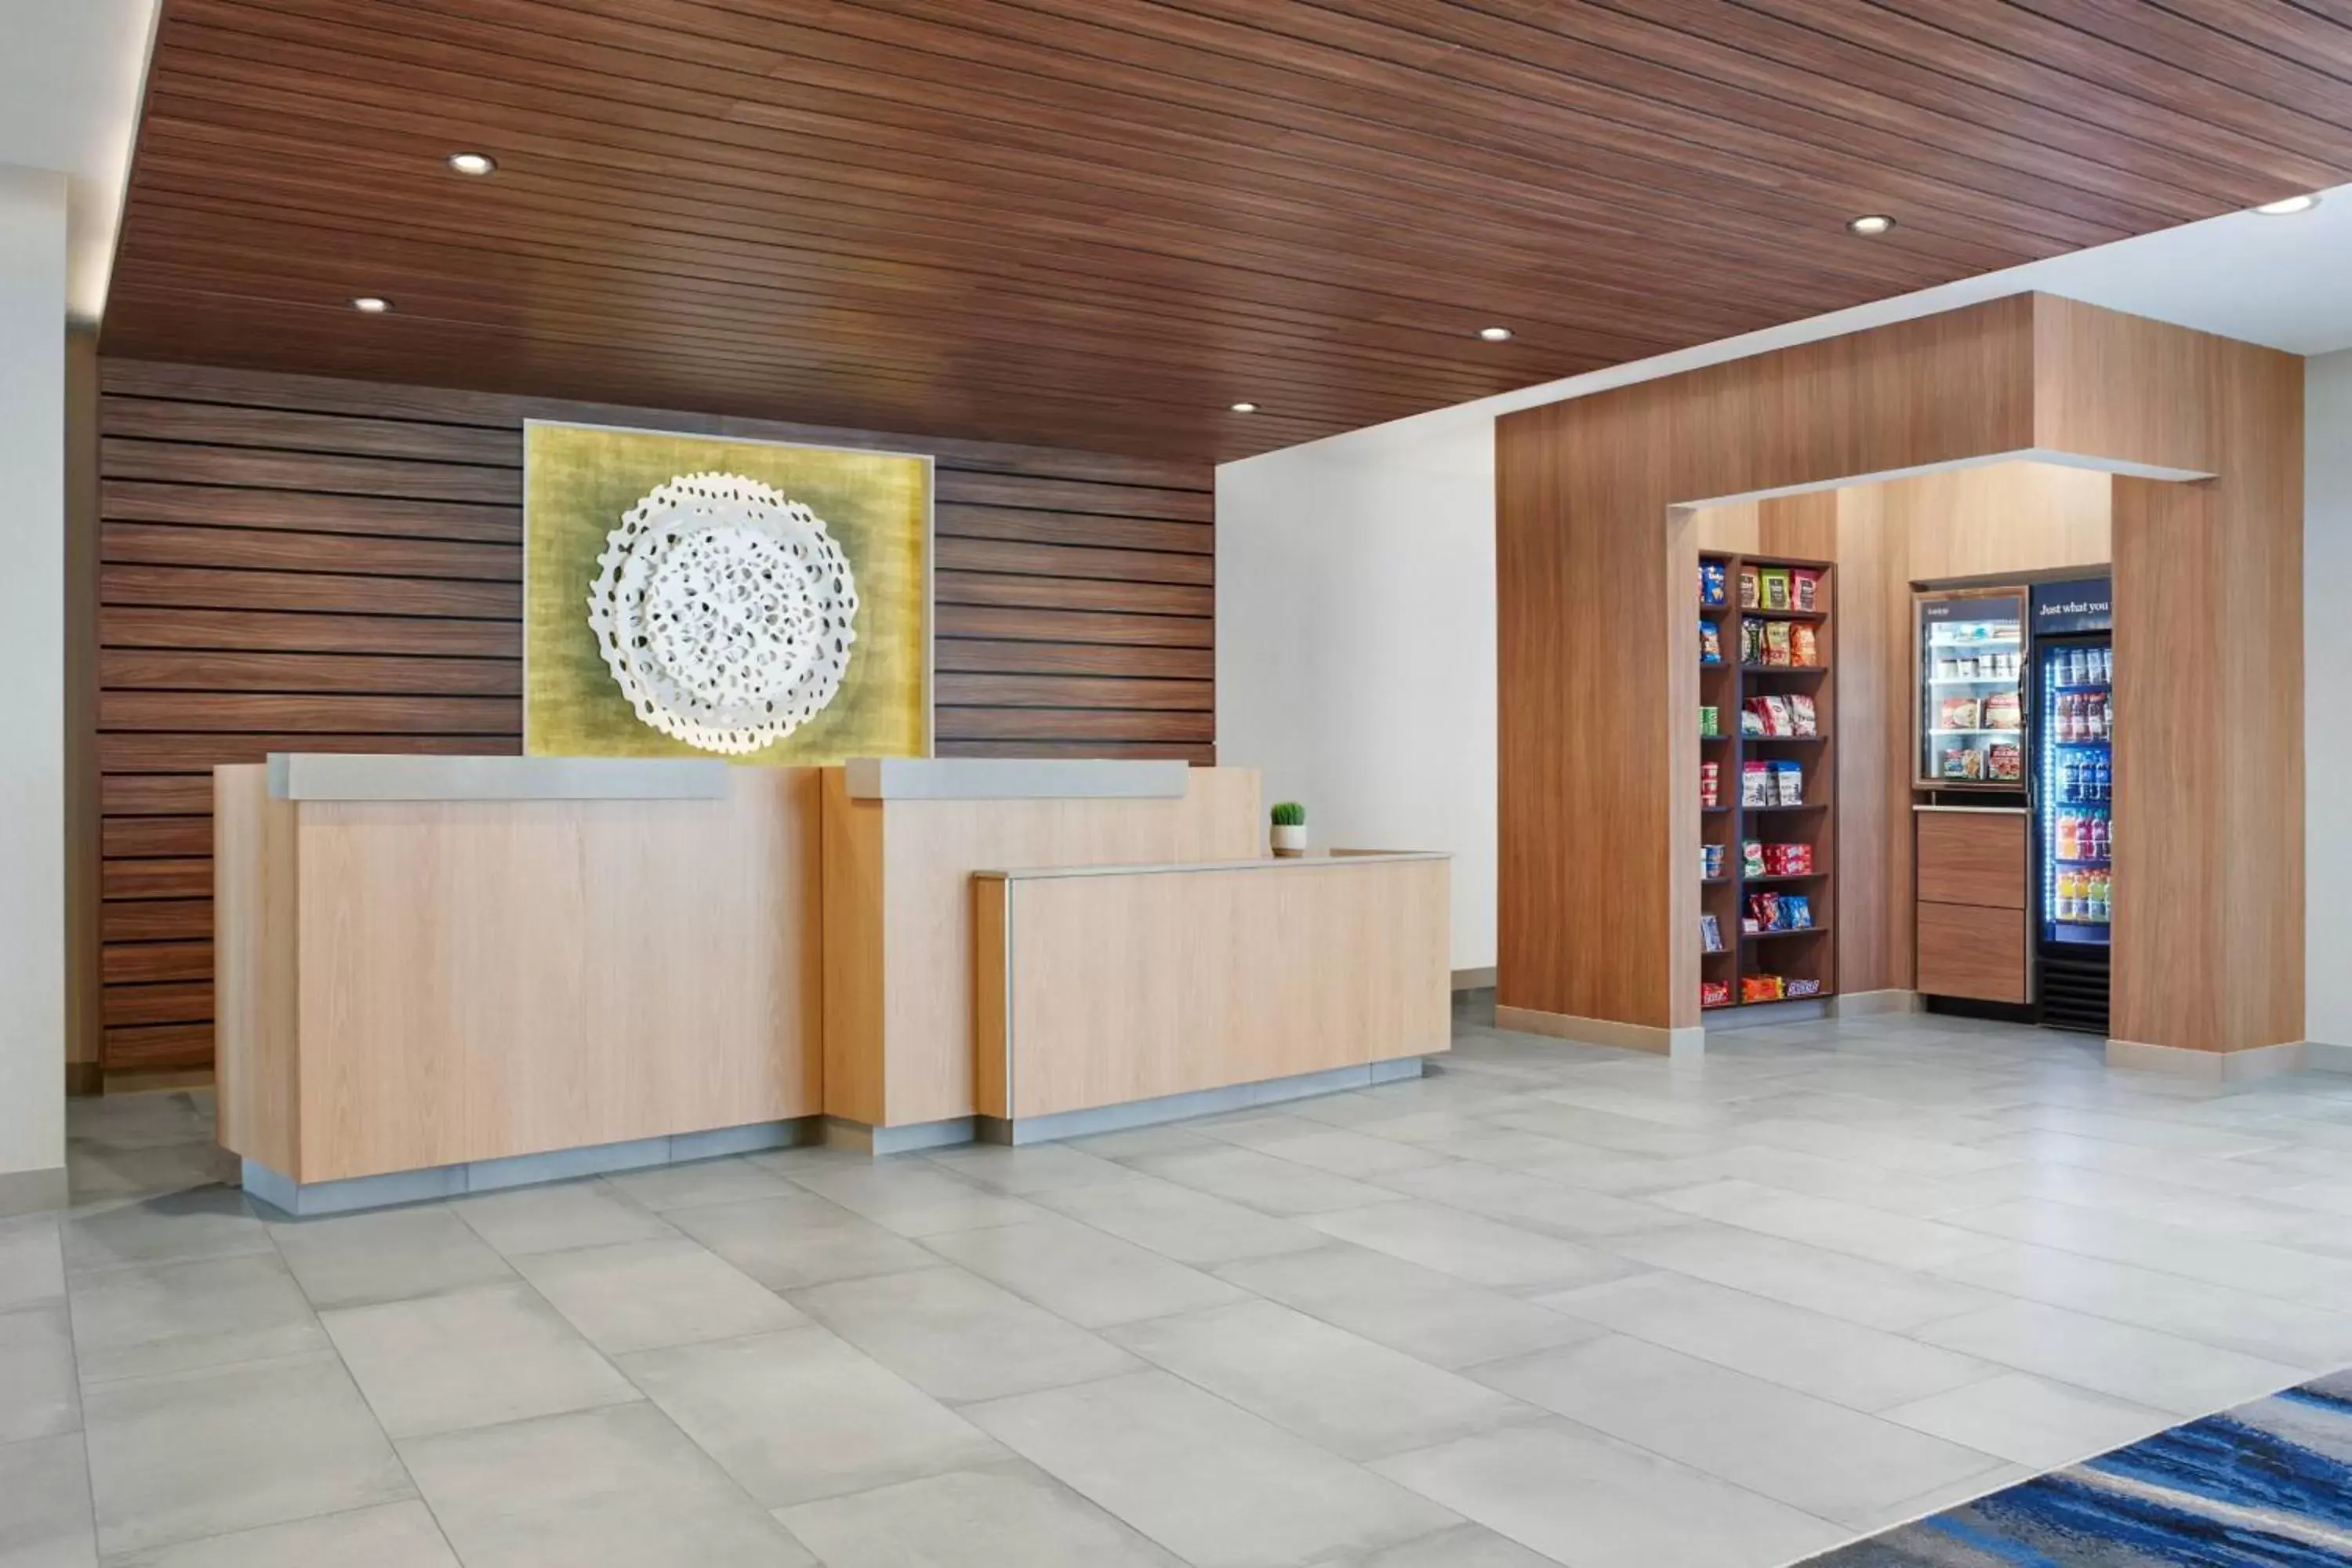 Lobby or reception, Lobby/Reception in Fairfield by Marriott Inn & Suites Batavia